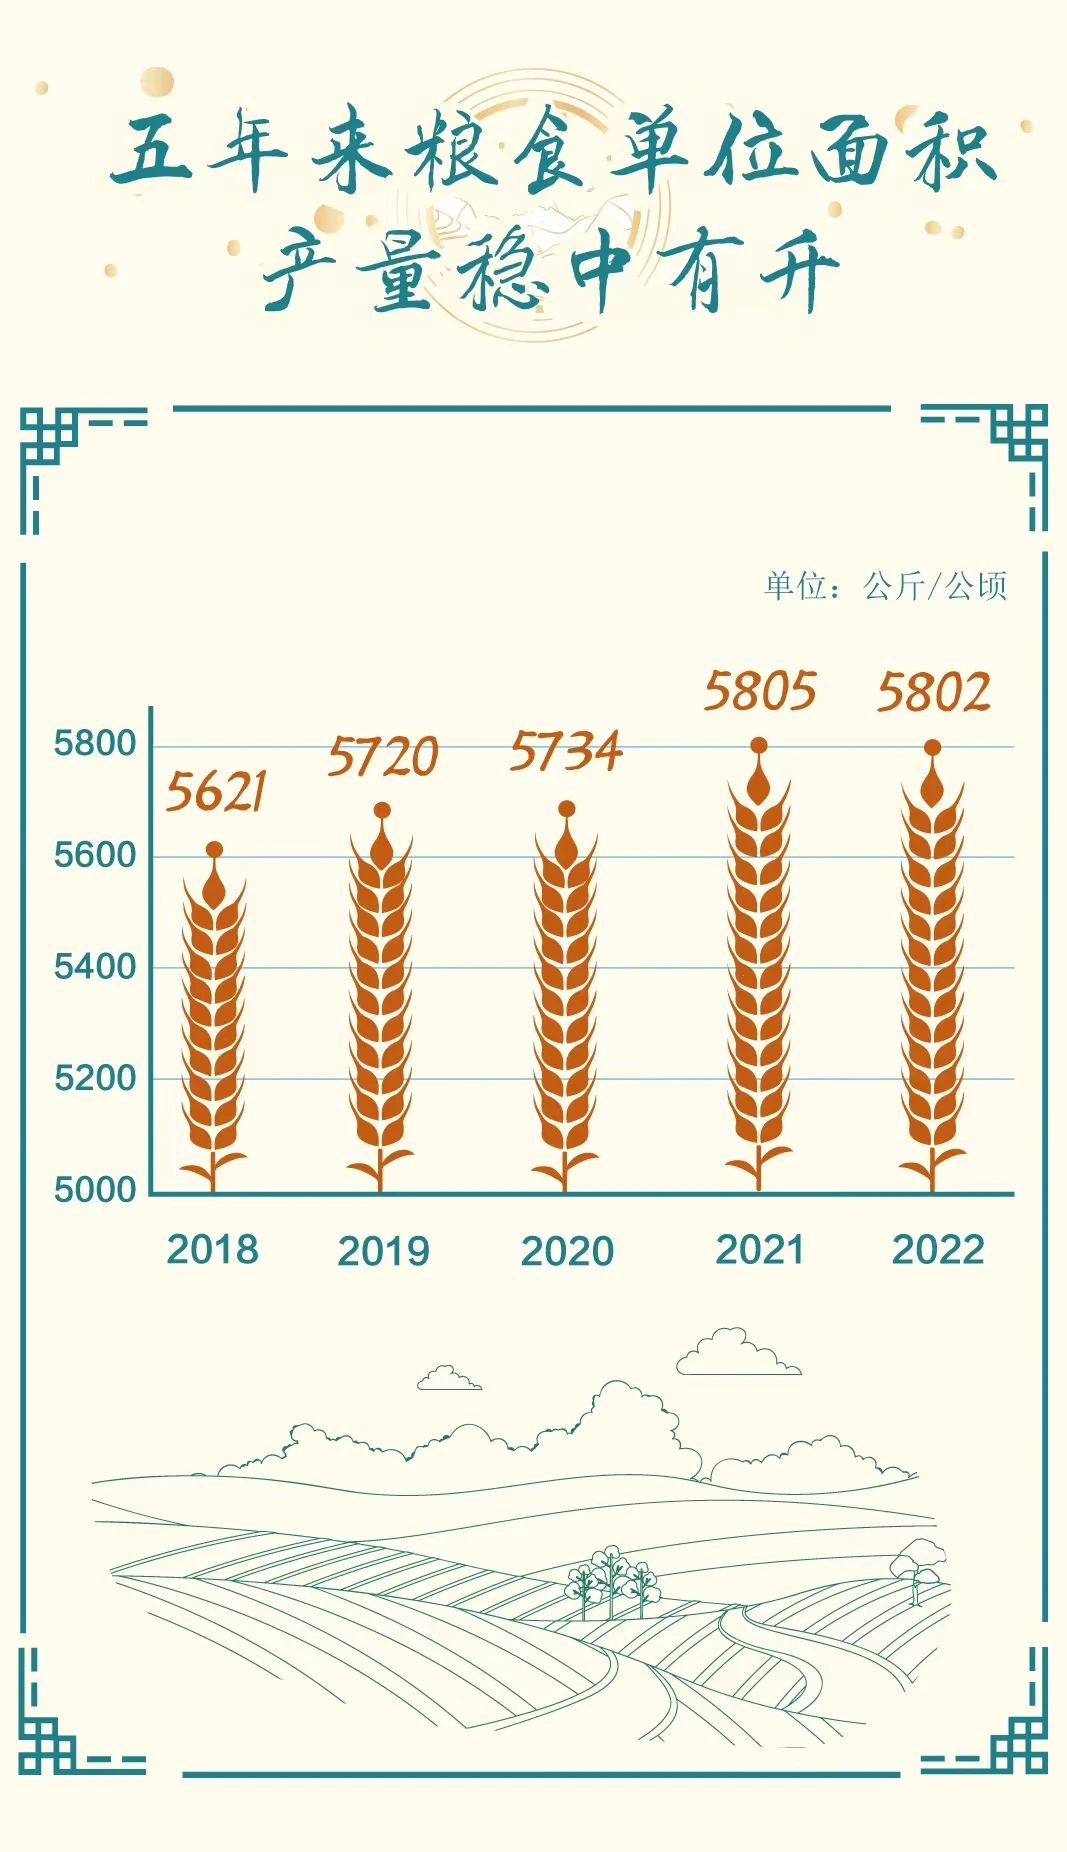 丰收来之不易，一图读懂2022年全国粮食产量